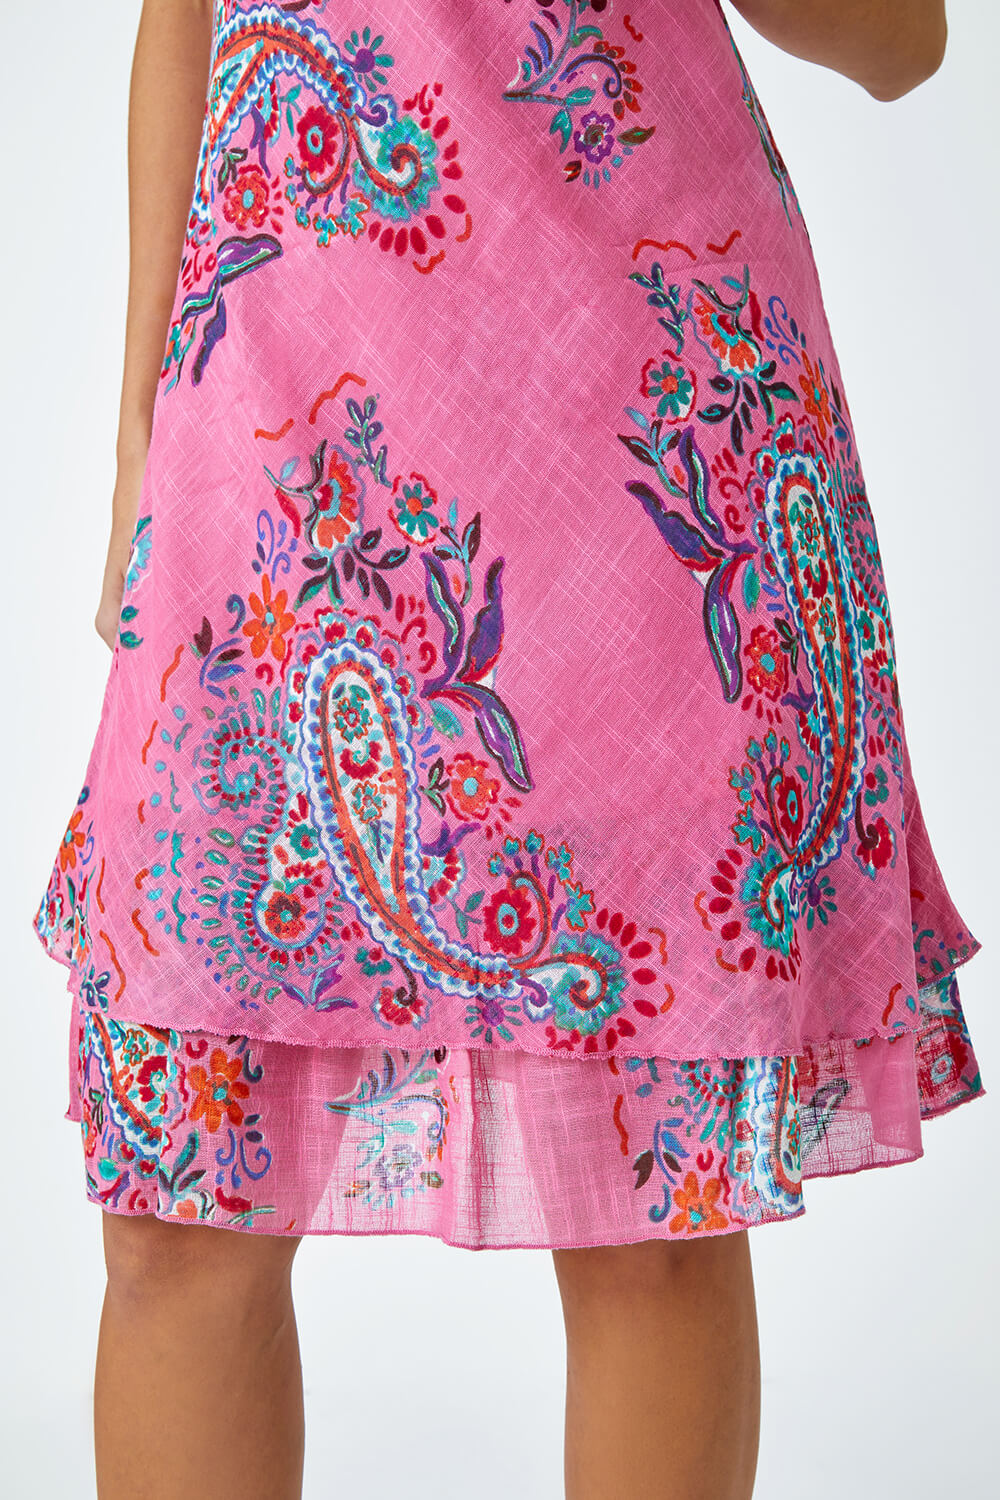 PINK Paisley Print Cotton Layered Dress, Image 5 of 5